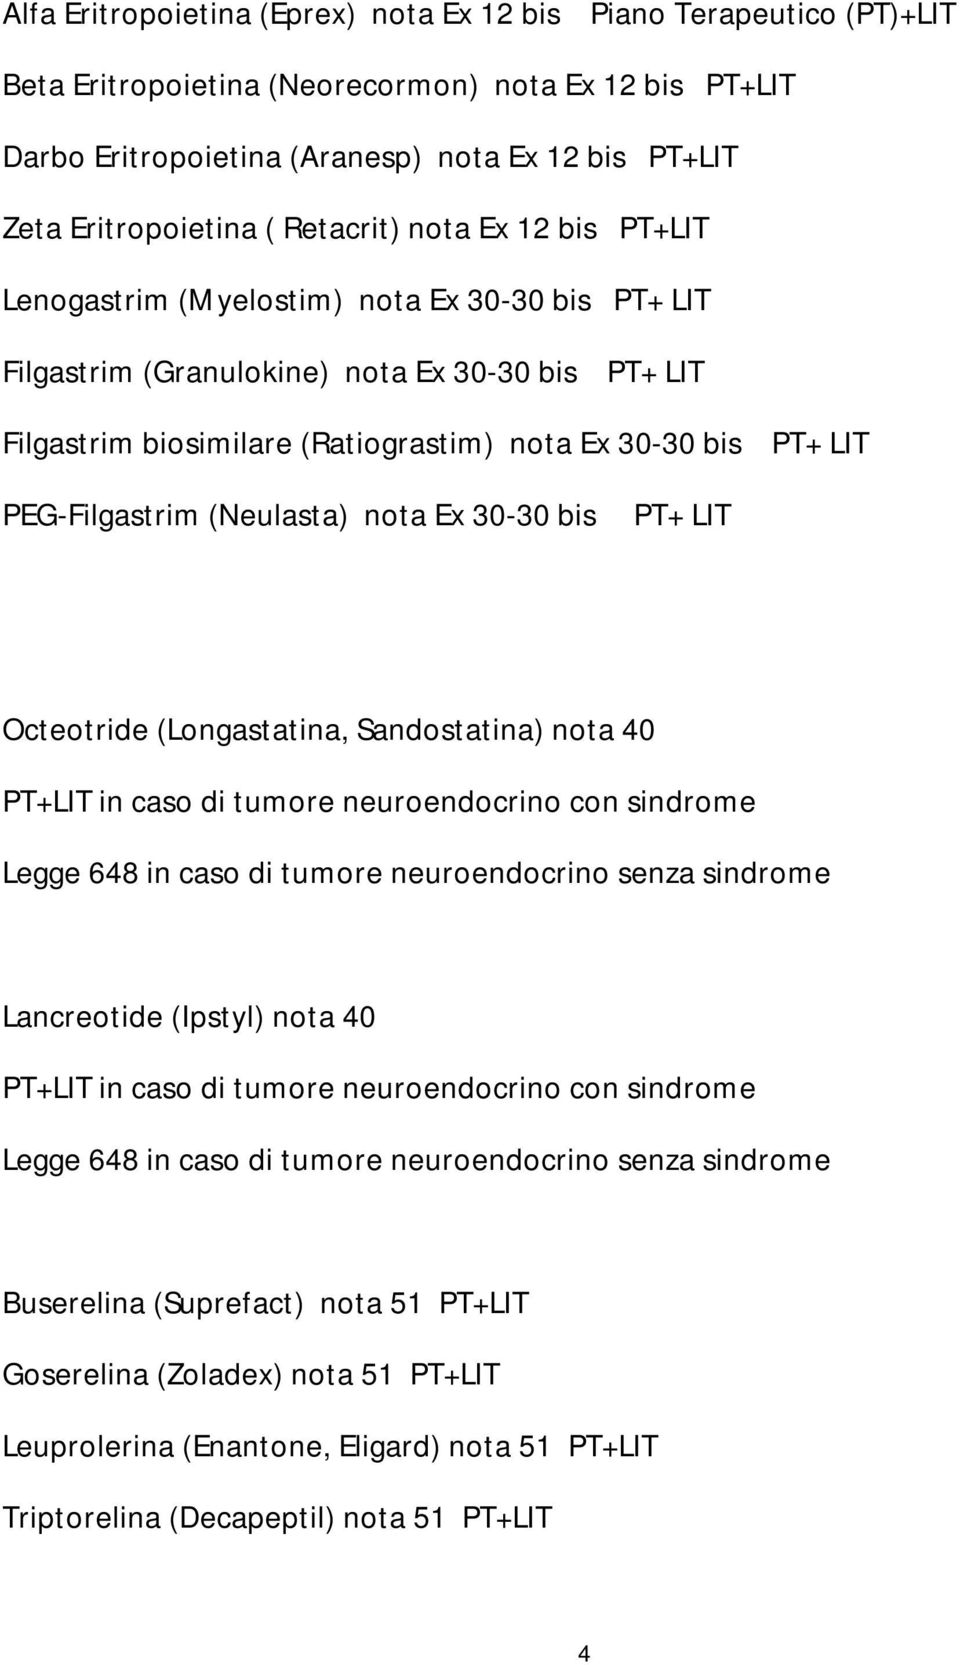 PEG-Filgastrim (Neulasta) nota Ex 30-30 bis PT+ LIT Octeotride (Longastatina, Sandostatina) nota 40 PT+LIT in caso di tumore neuroendocrino con sindrome Legge 648 in caso di tumore neuroendocrino